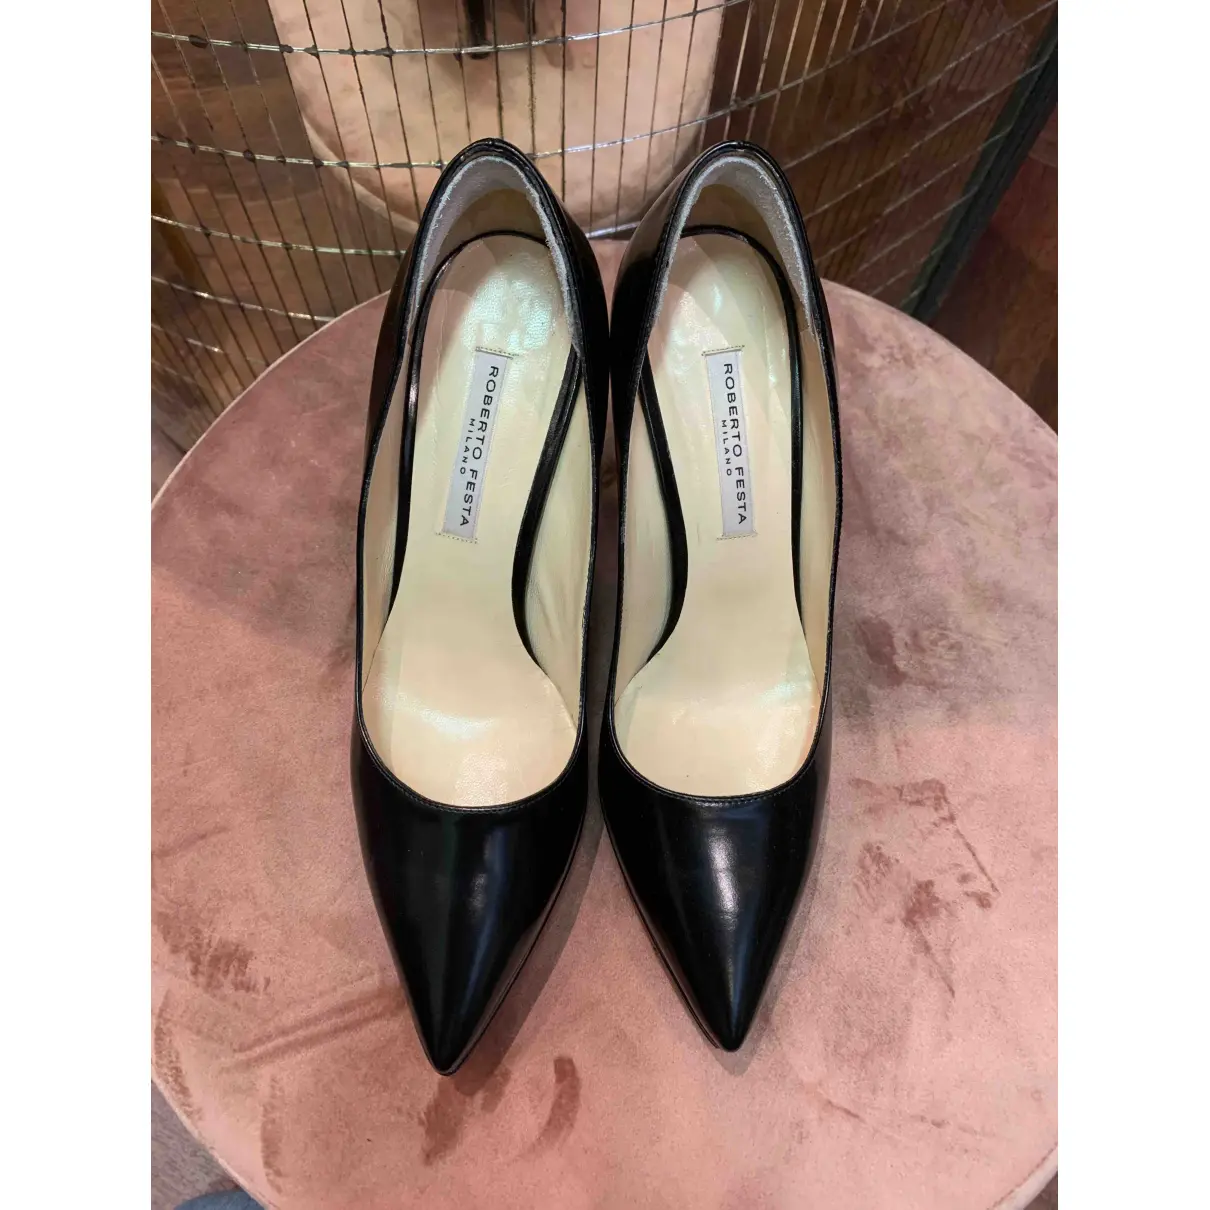 Buy Roberto Festa Leather heels online